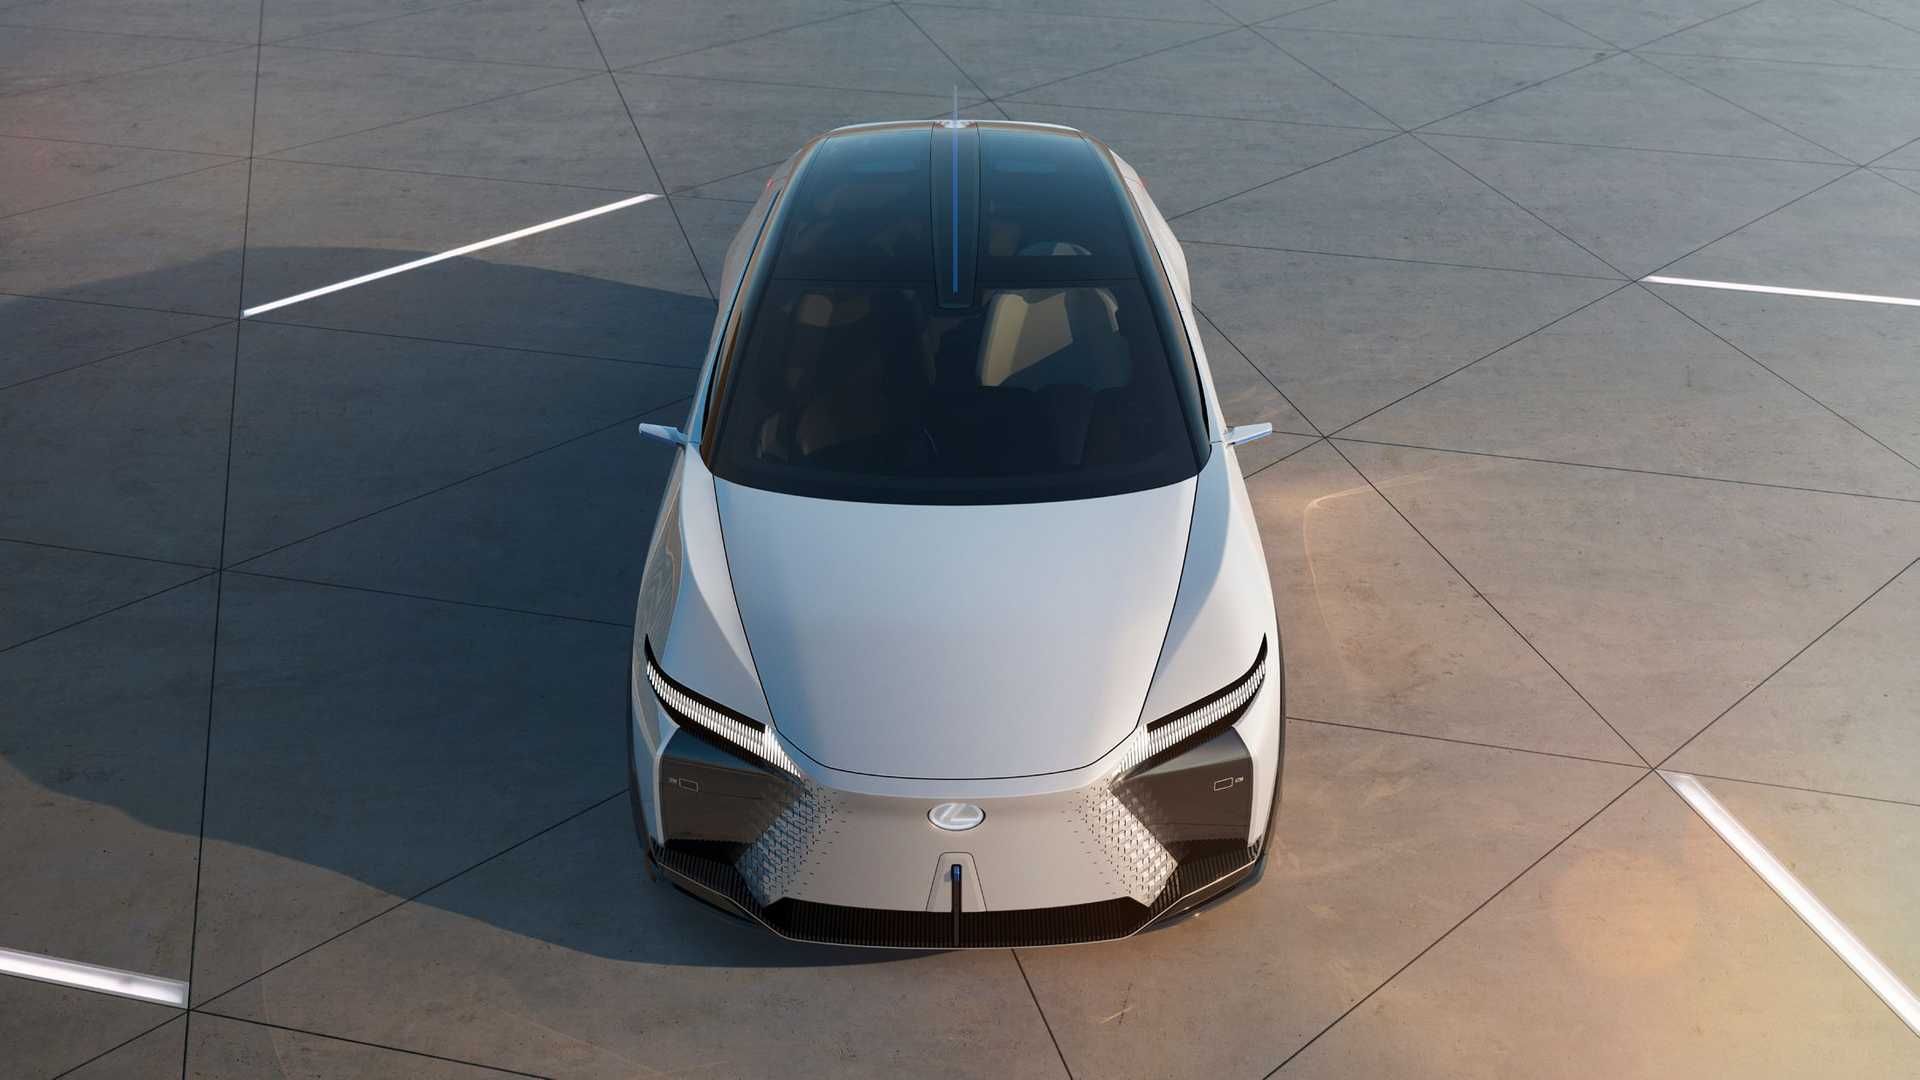 نمای بالا خودروی مفهومی و برقی لکسوس / Lexus LF-Z Electrified Concept EV سفید رنگ